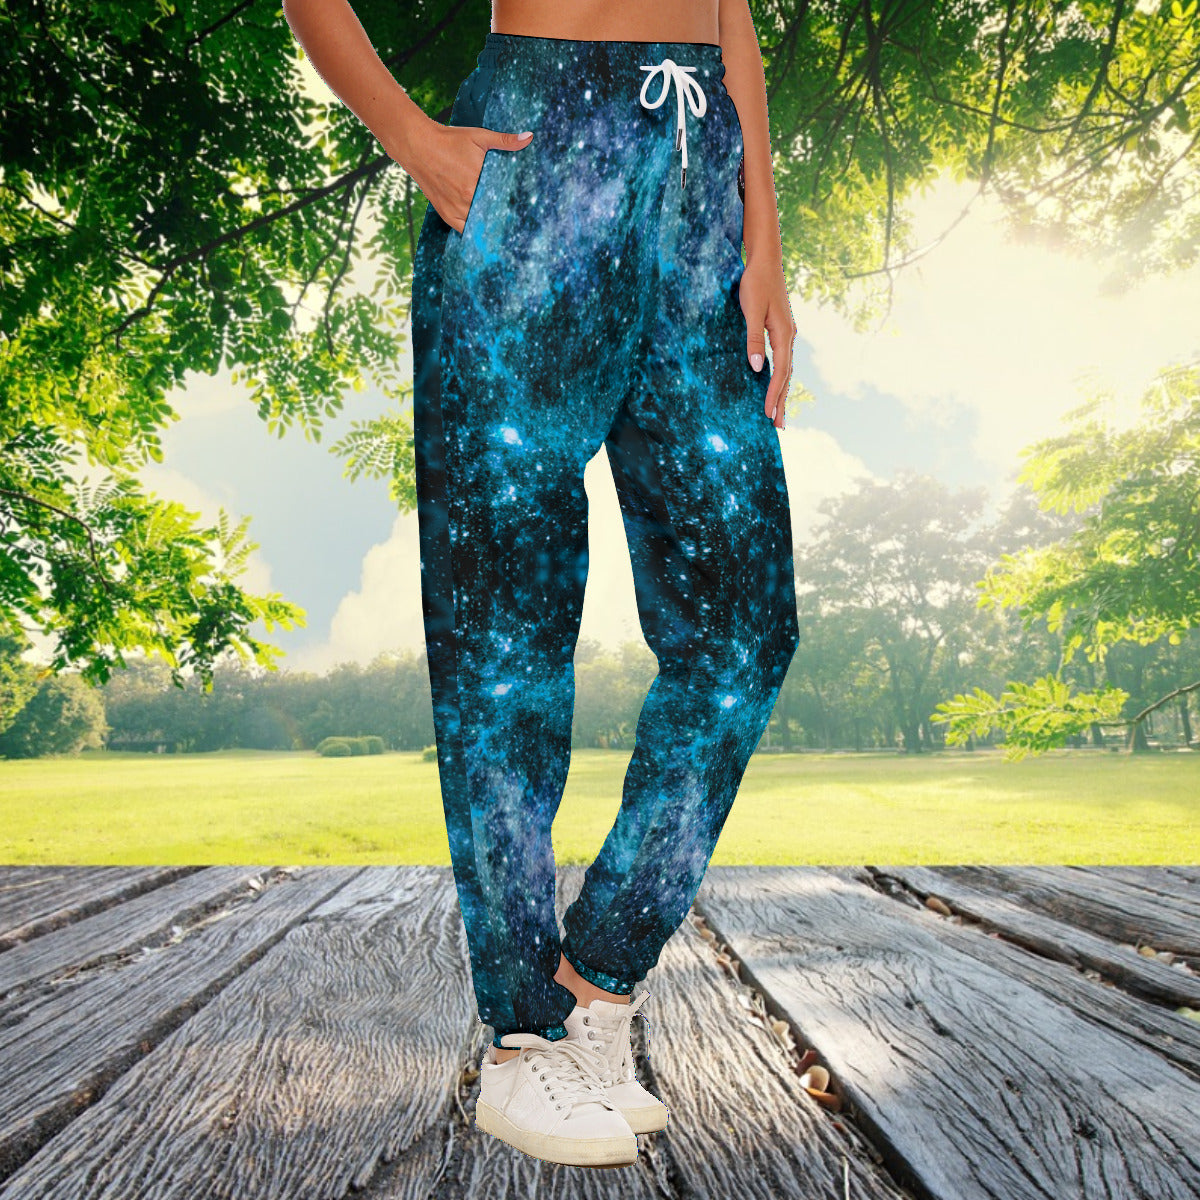 My Journey Galaxy Space Nebula Women's Fashion Casual Pants The Nebula Palace: Spiritually Cosmic Fashion